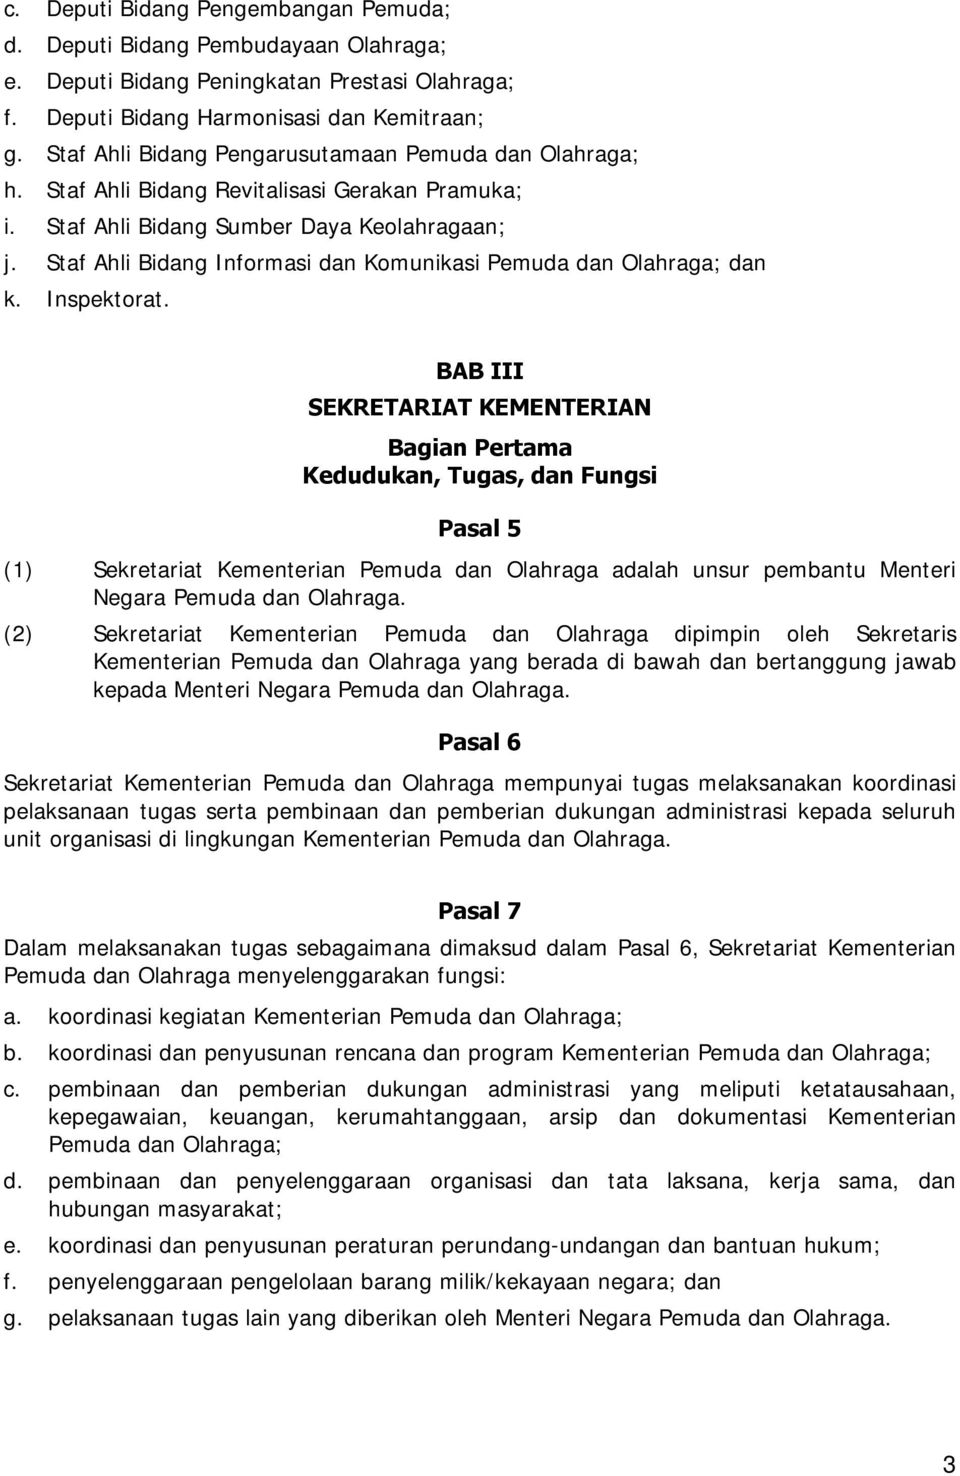 Staf Ahli Bidang Informasi dan Komunikasi Pemuda dan Olahraga; dan k. Inspektorat.